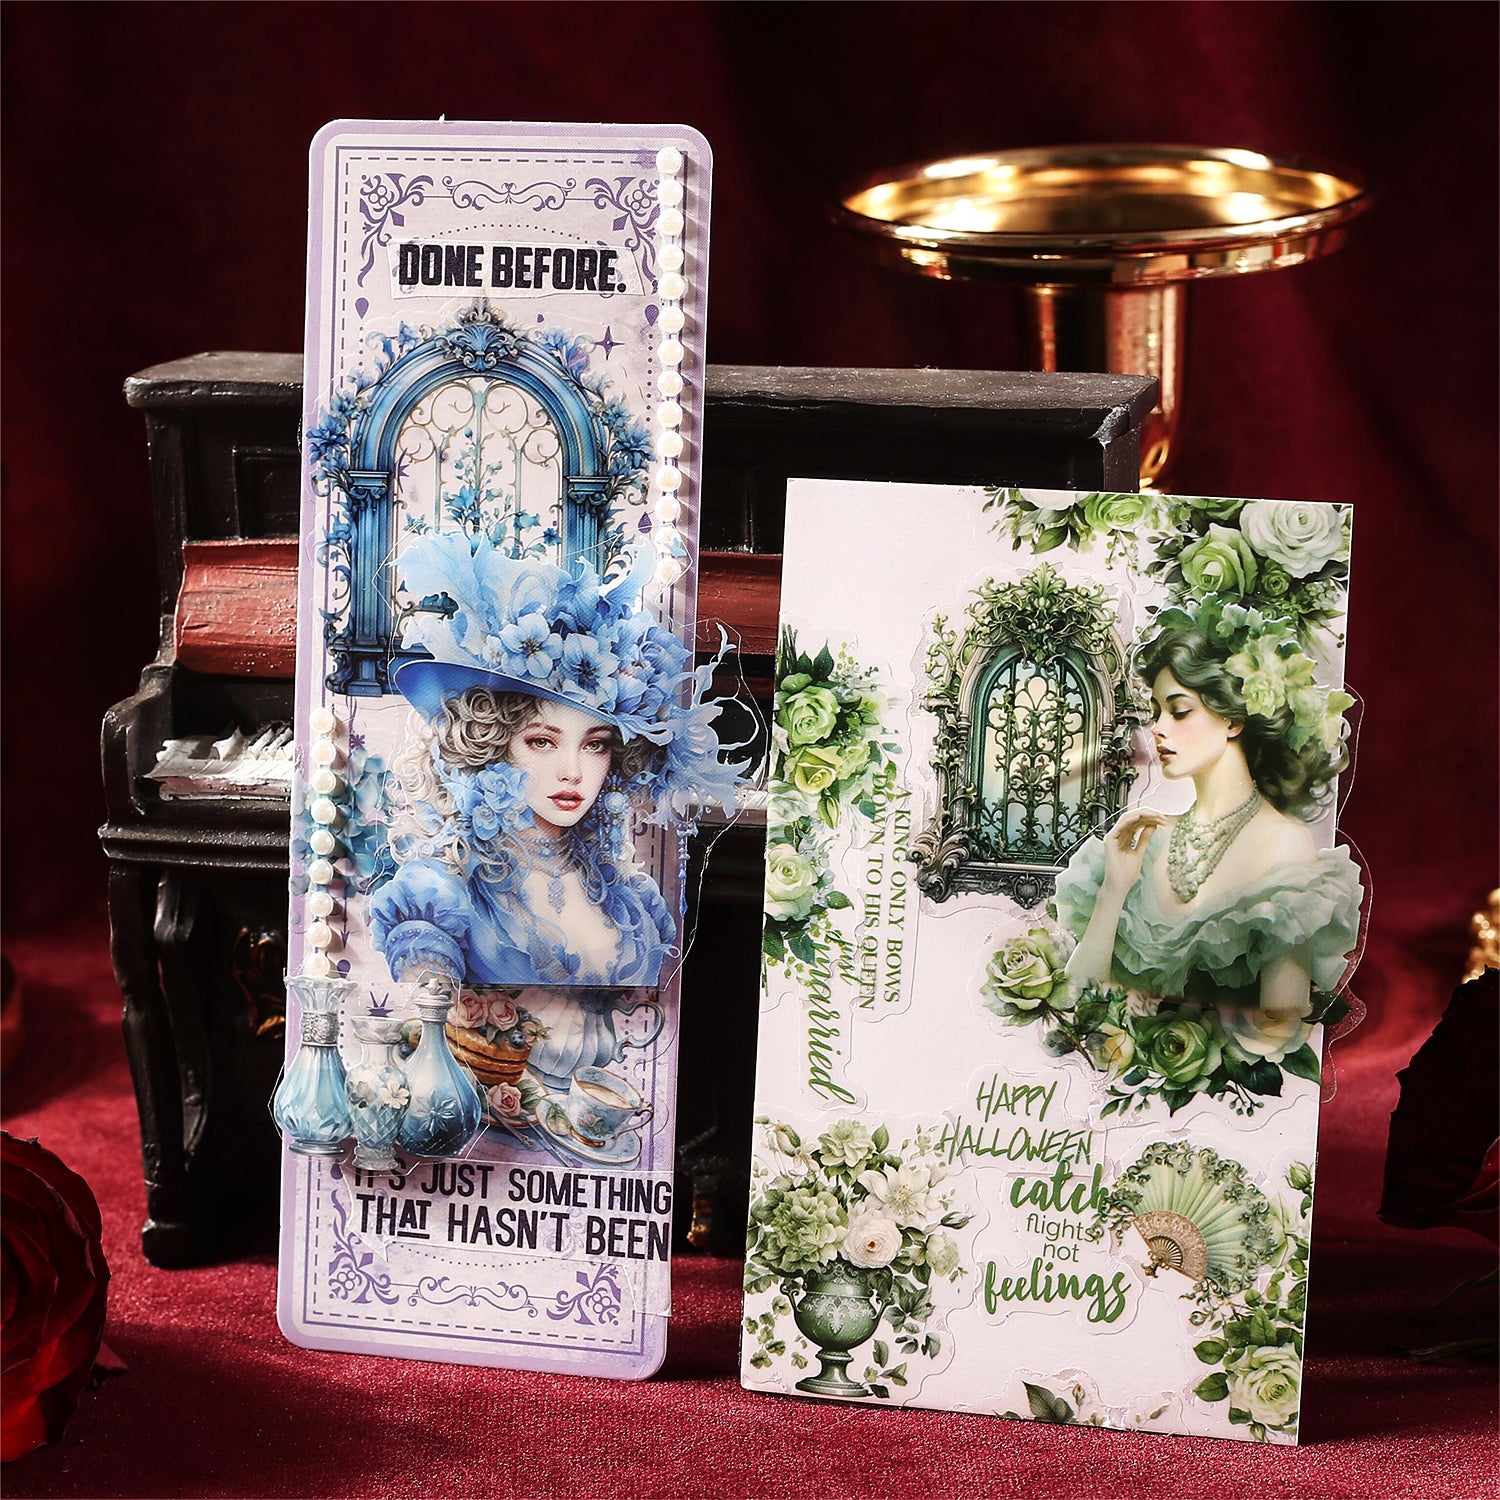 Baroque Garden Girl Pre-cut Sticker Book